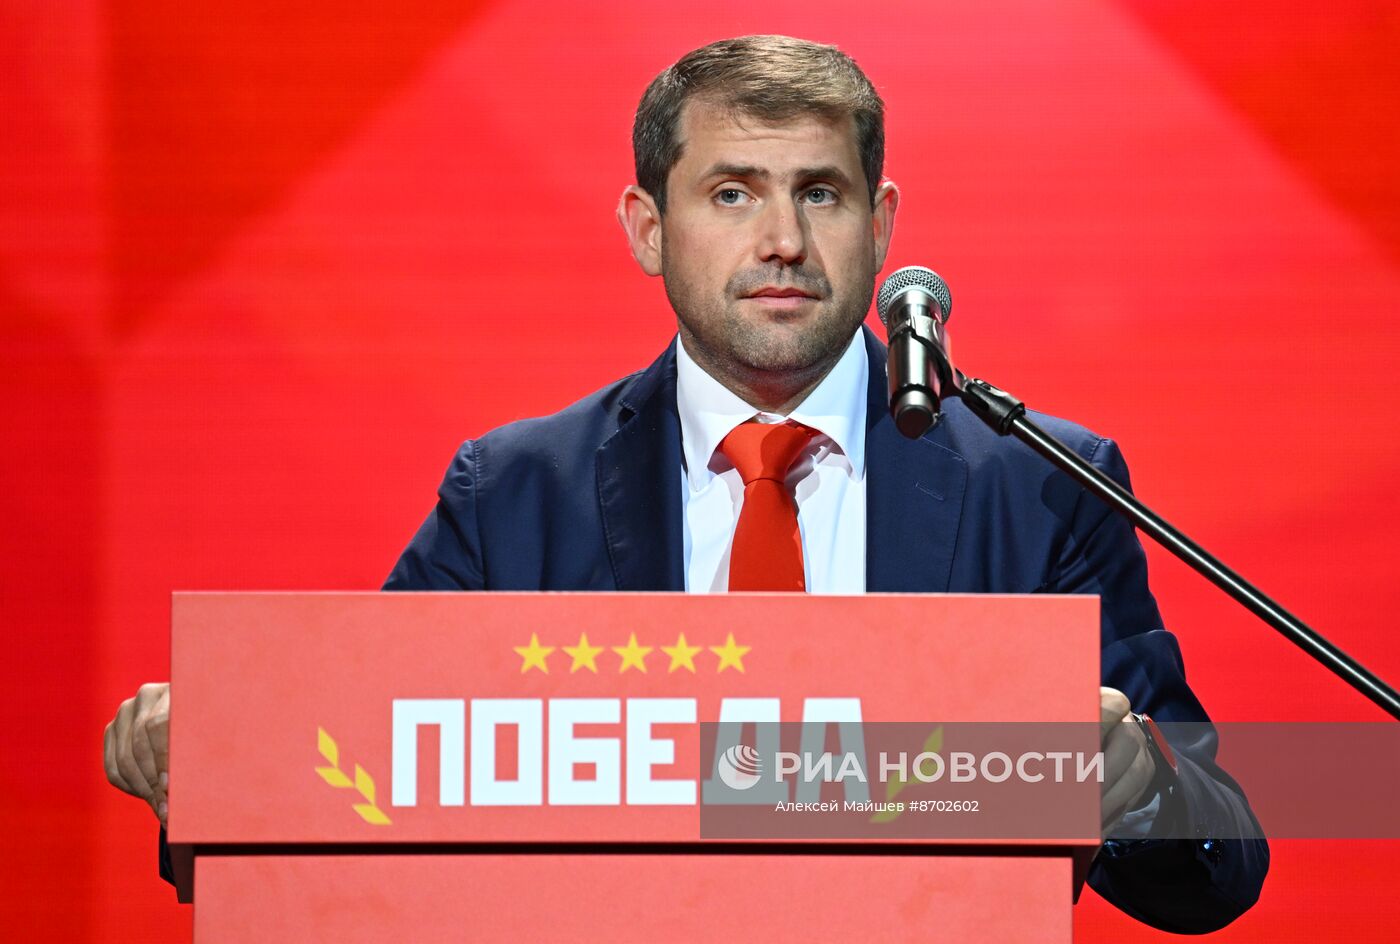 Съезд оппозиционного молдавского блока "Победа"